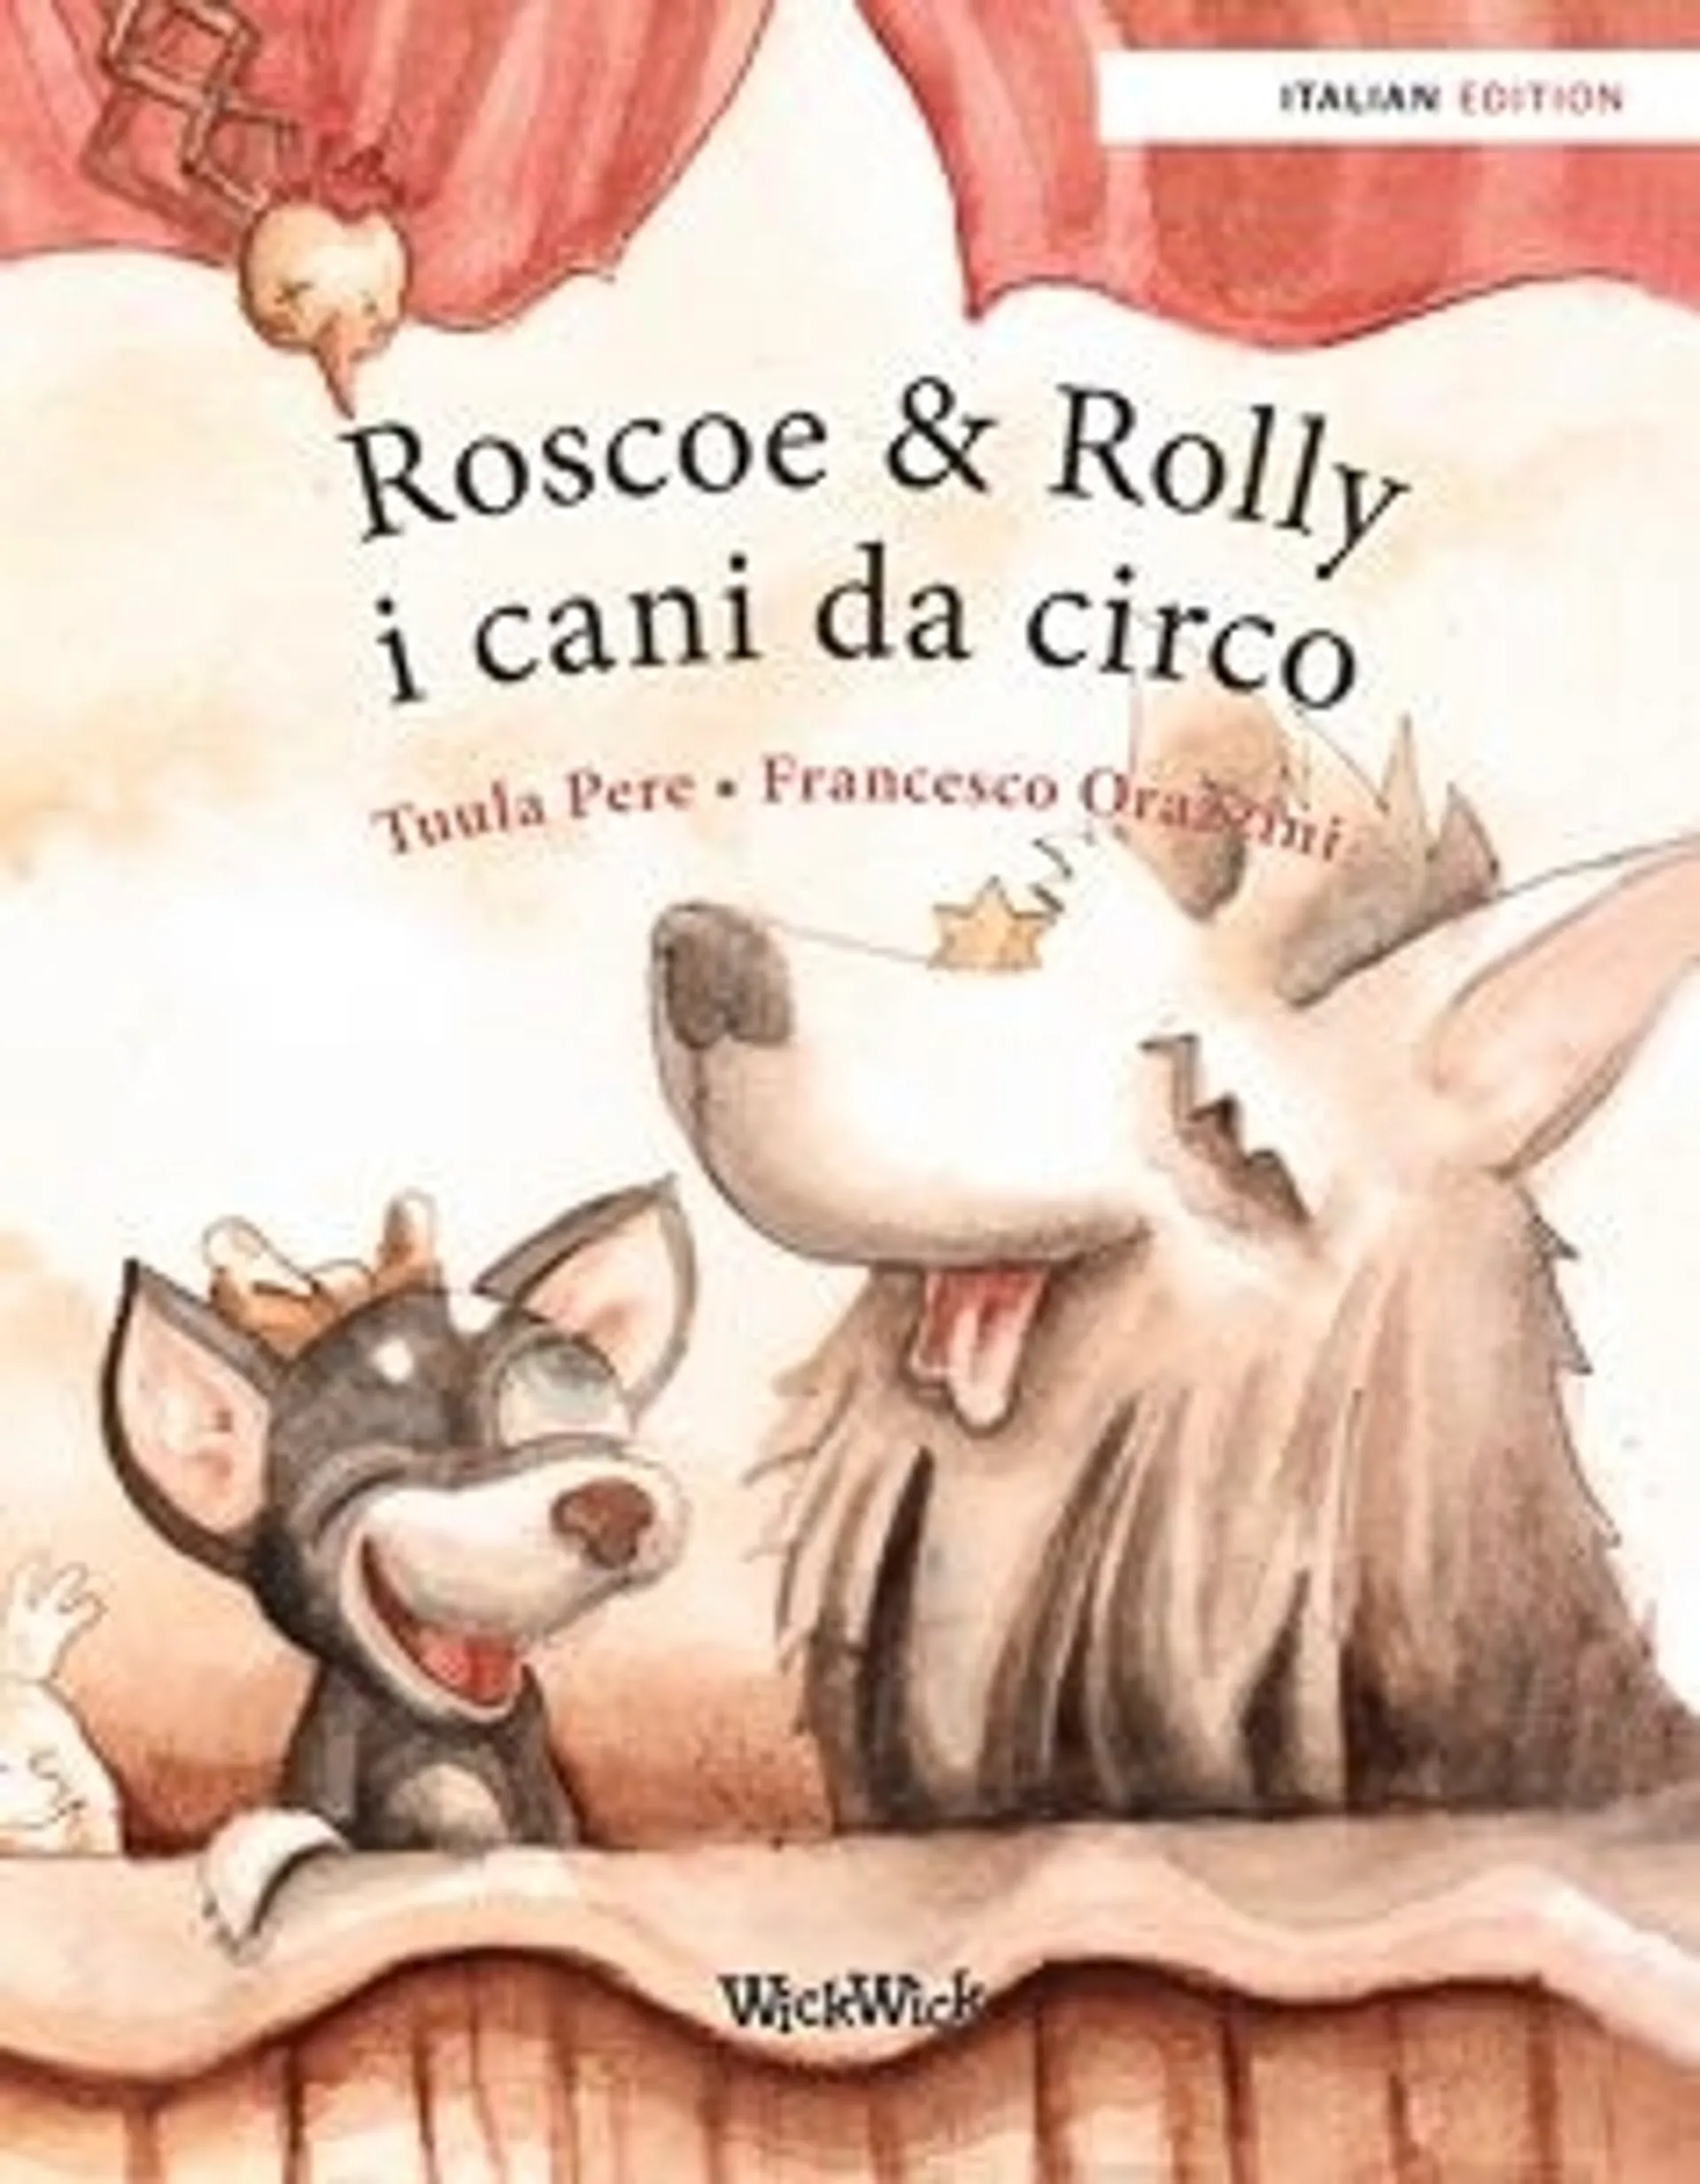 Pere, Roscoe & Rolly i cani da circo